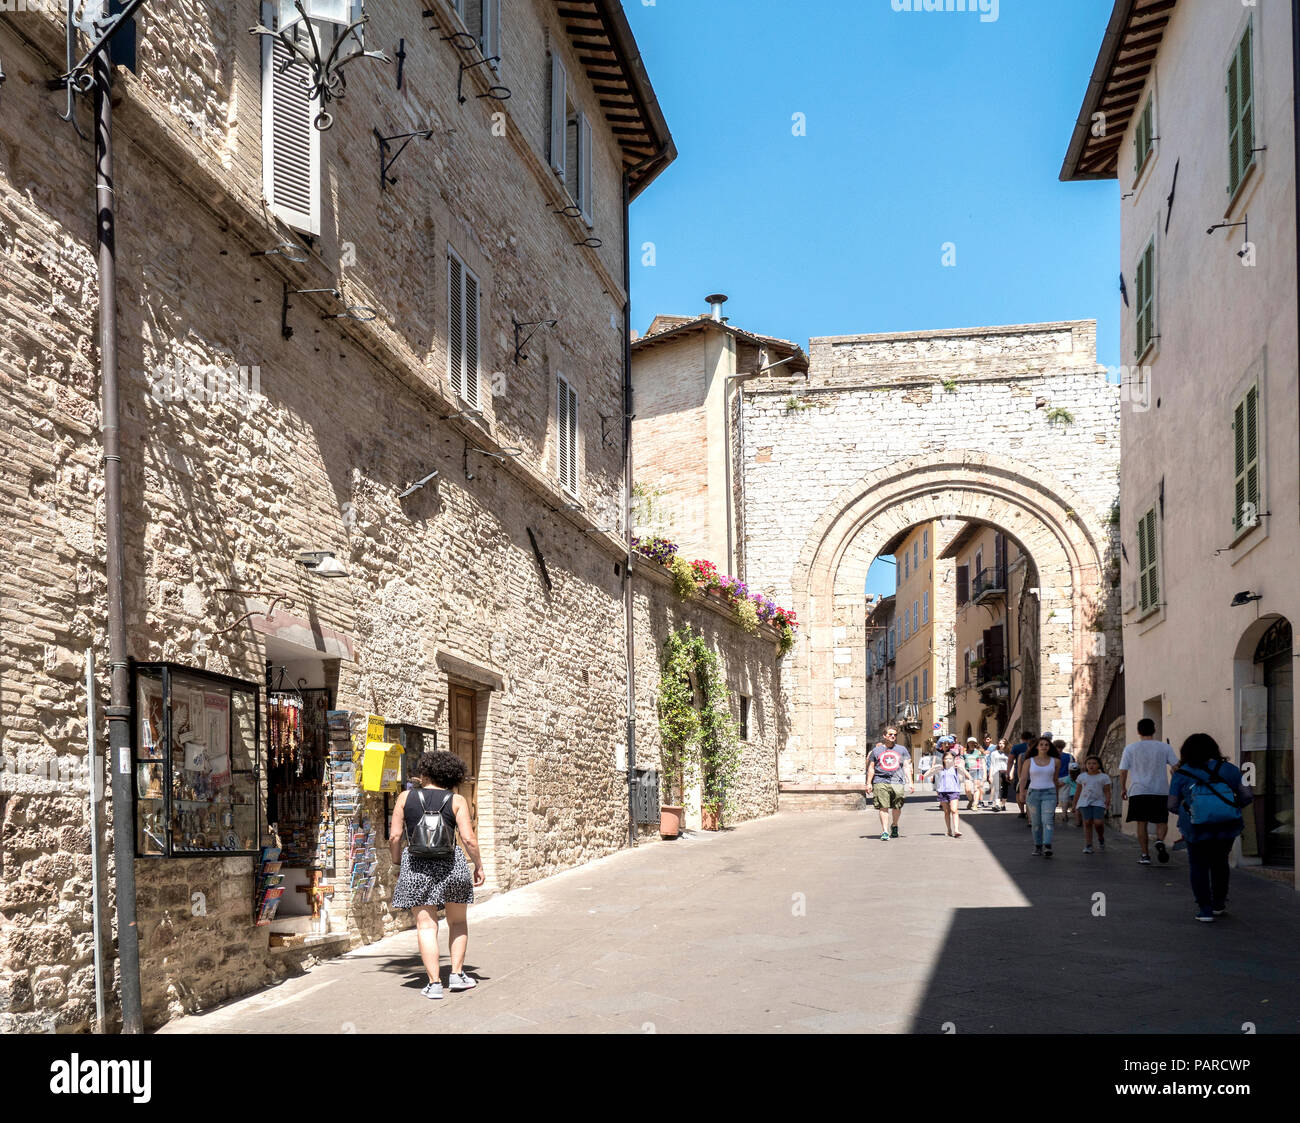 Une rue médiévale menant à un porche pour le centre-ville dans la ville d'assise, dans la province de Pérouse, Italie Banque D'Images